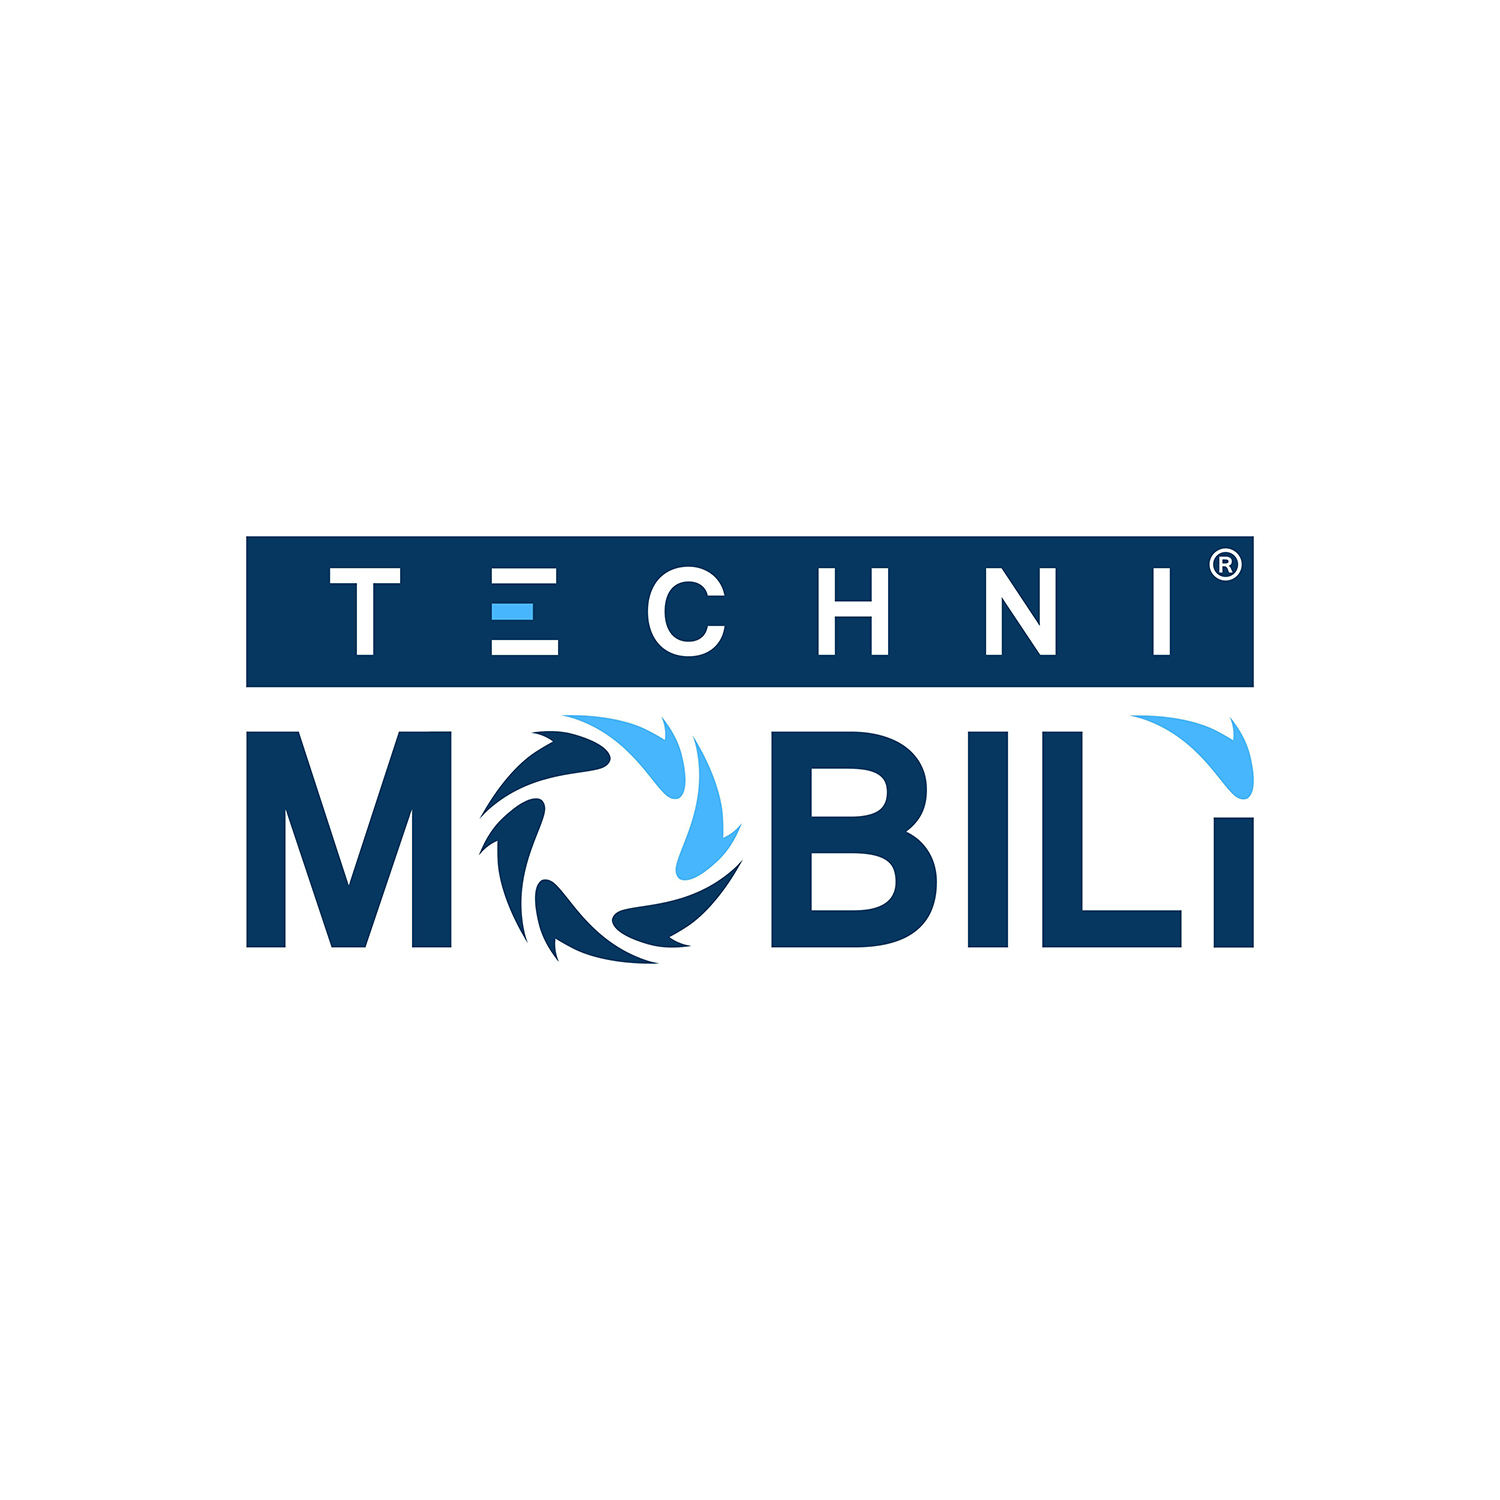 Techni Mobili Profile Background